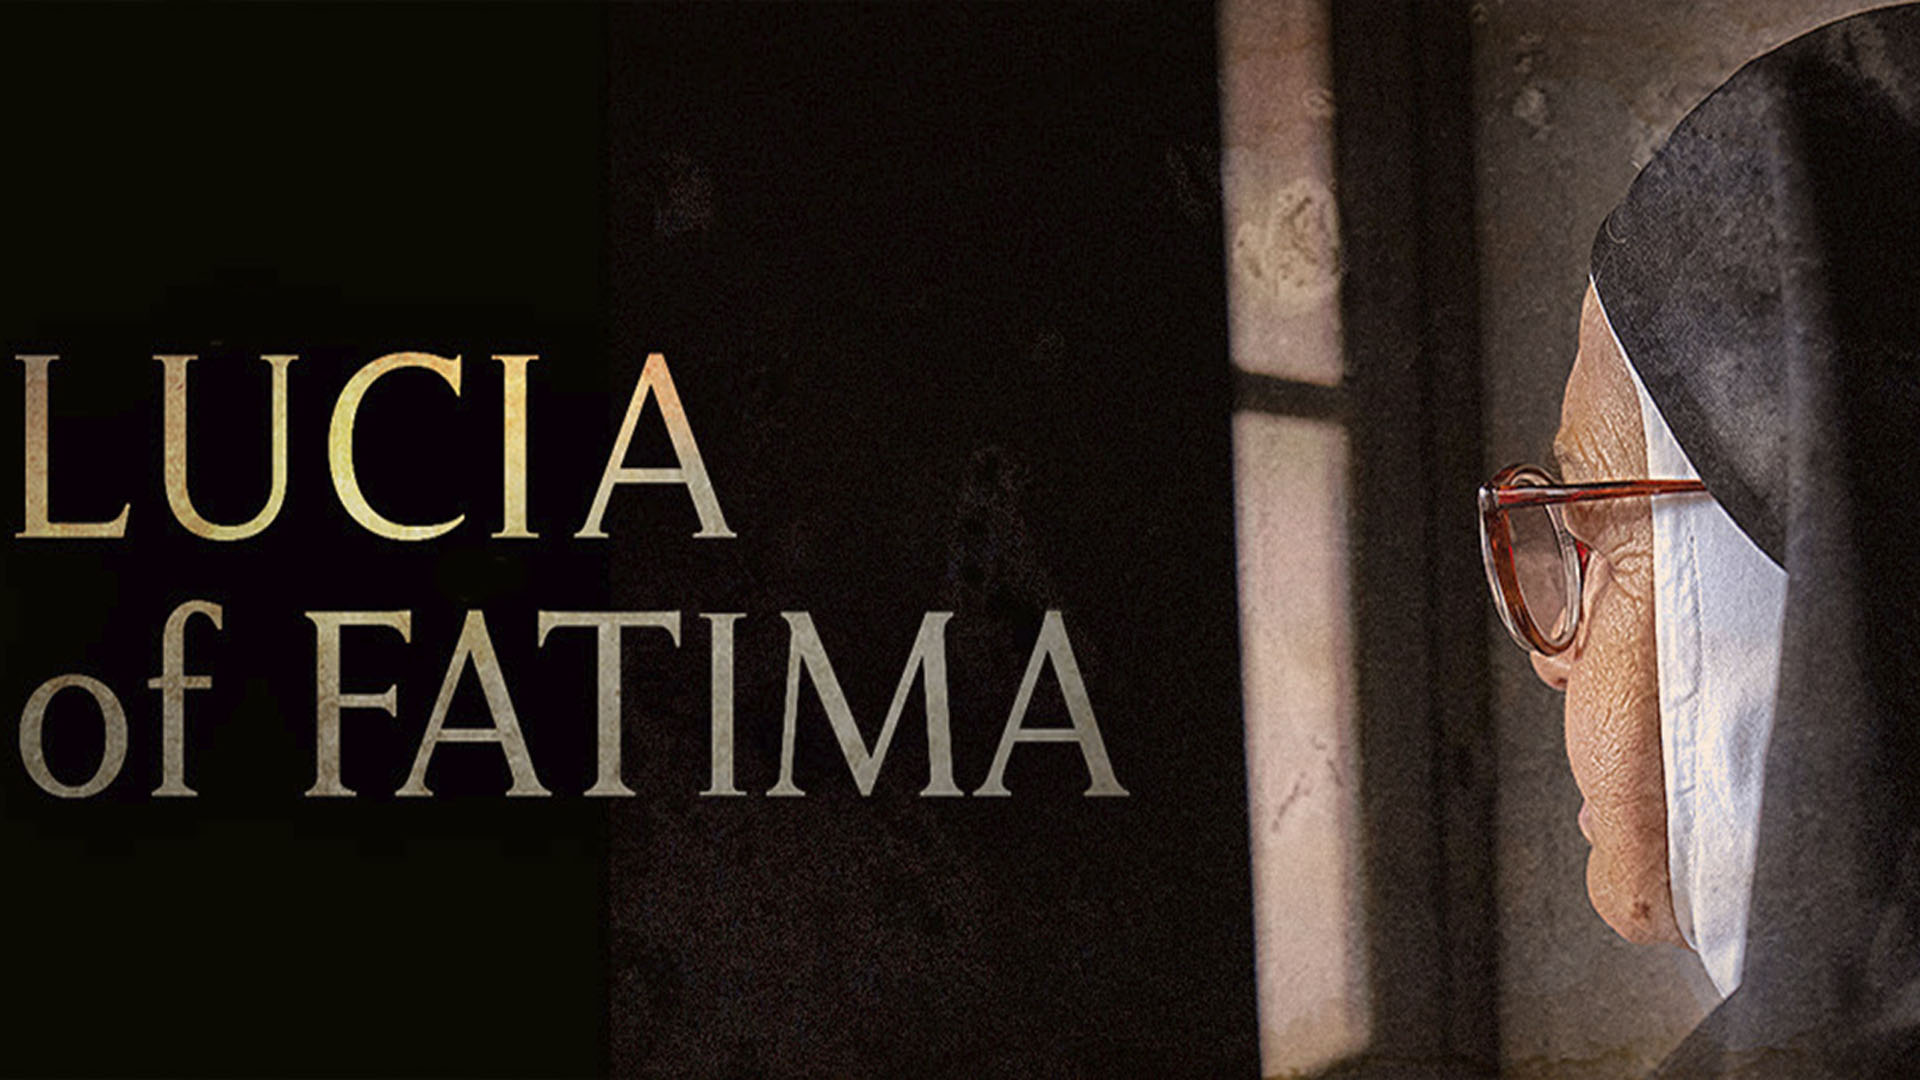 Lucia of Fatima